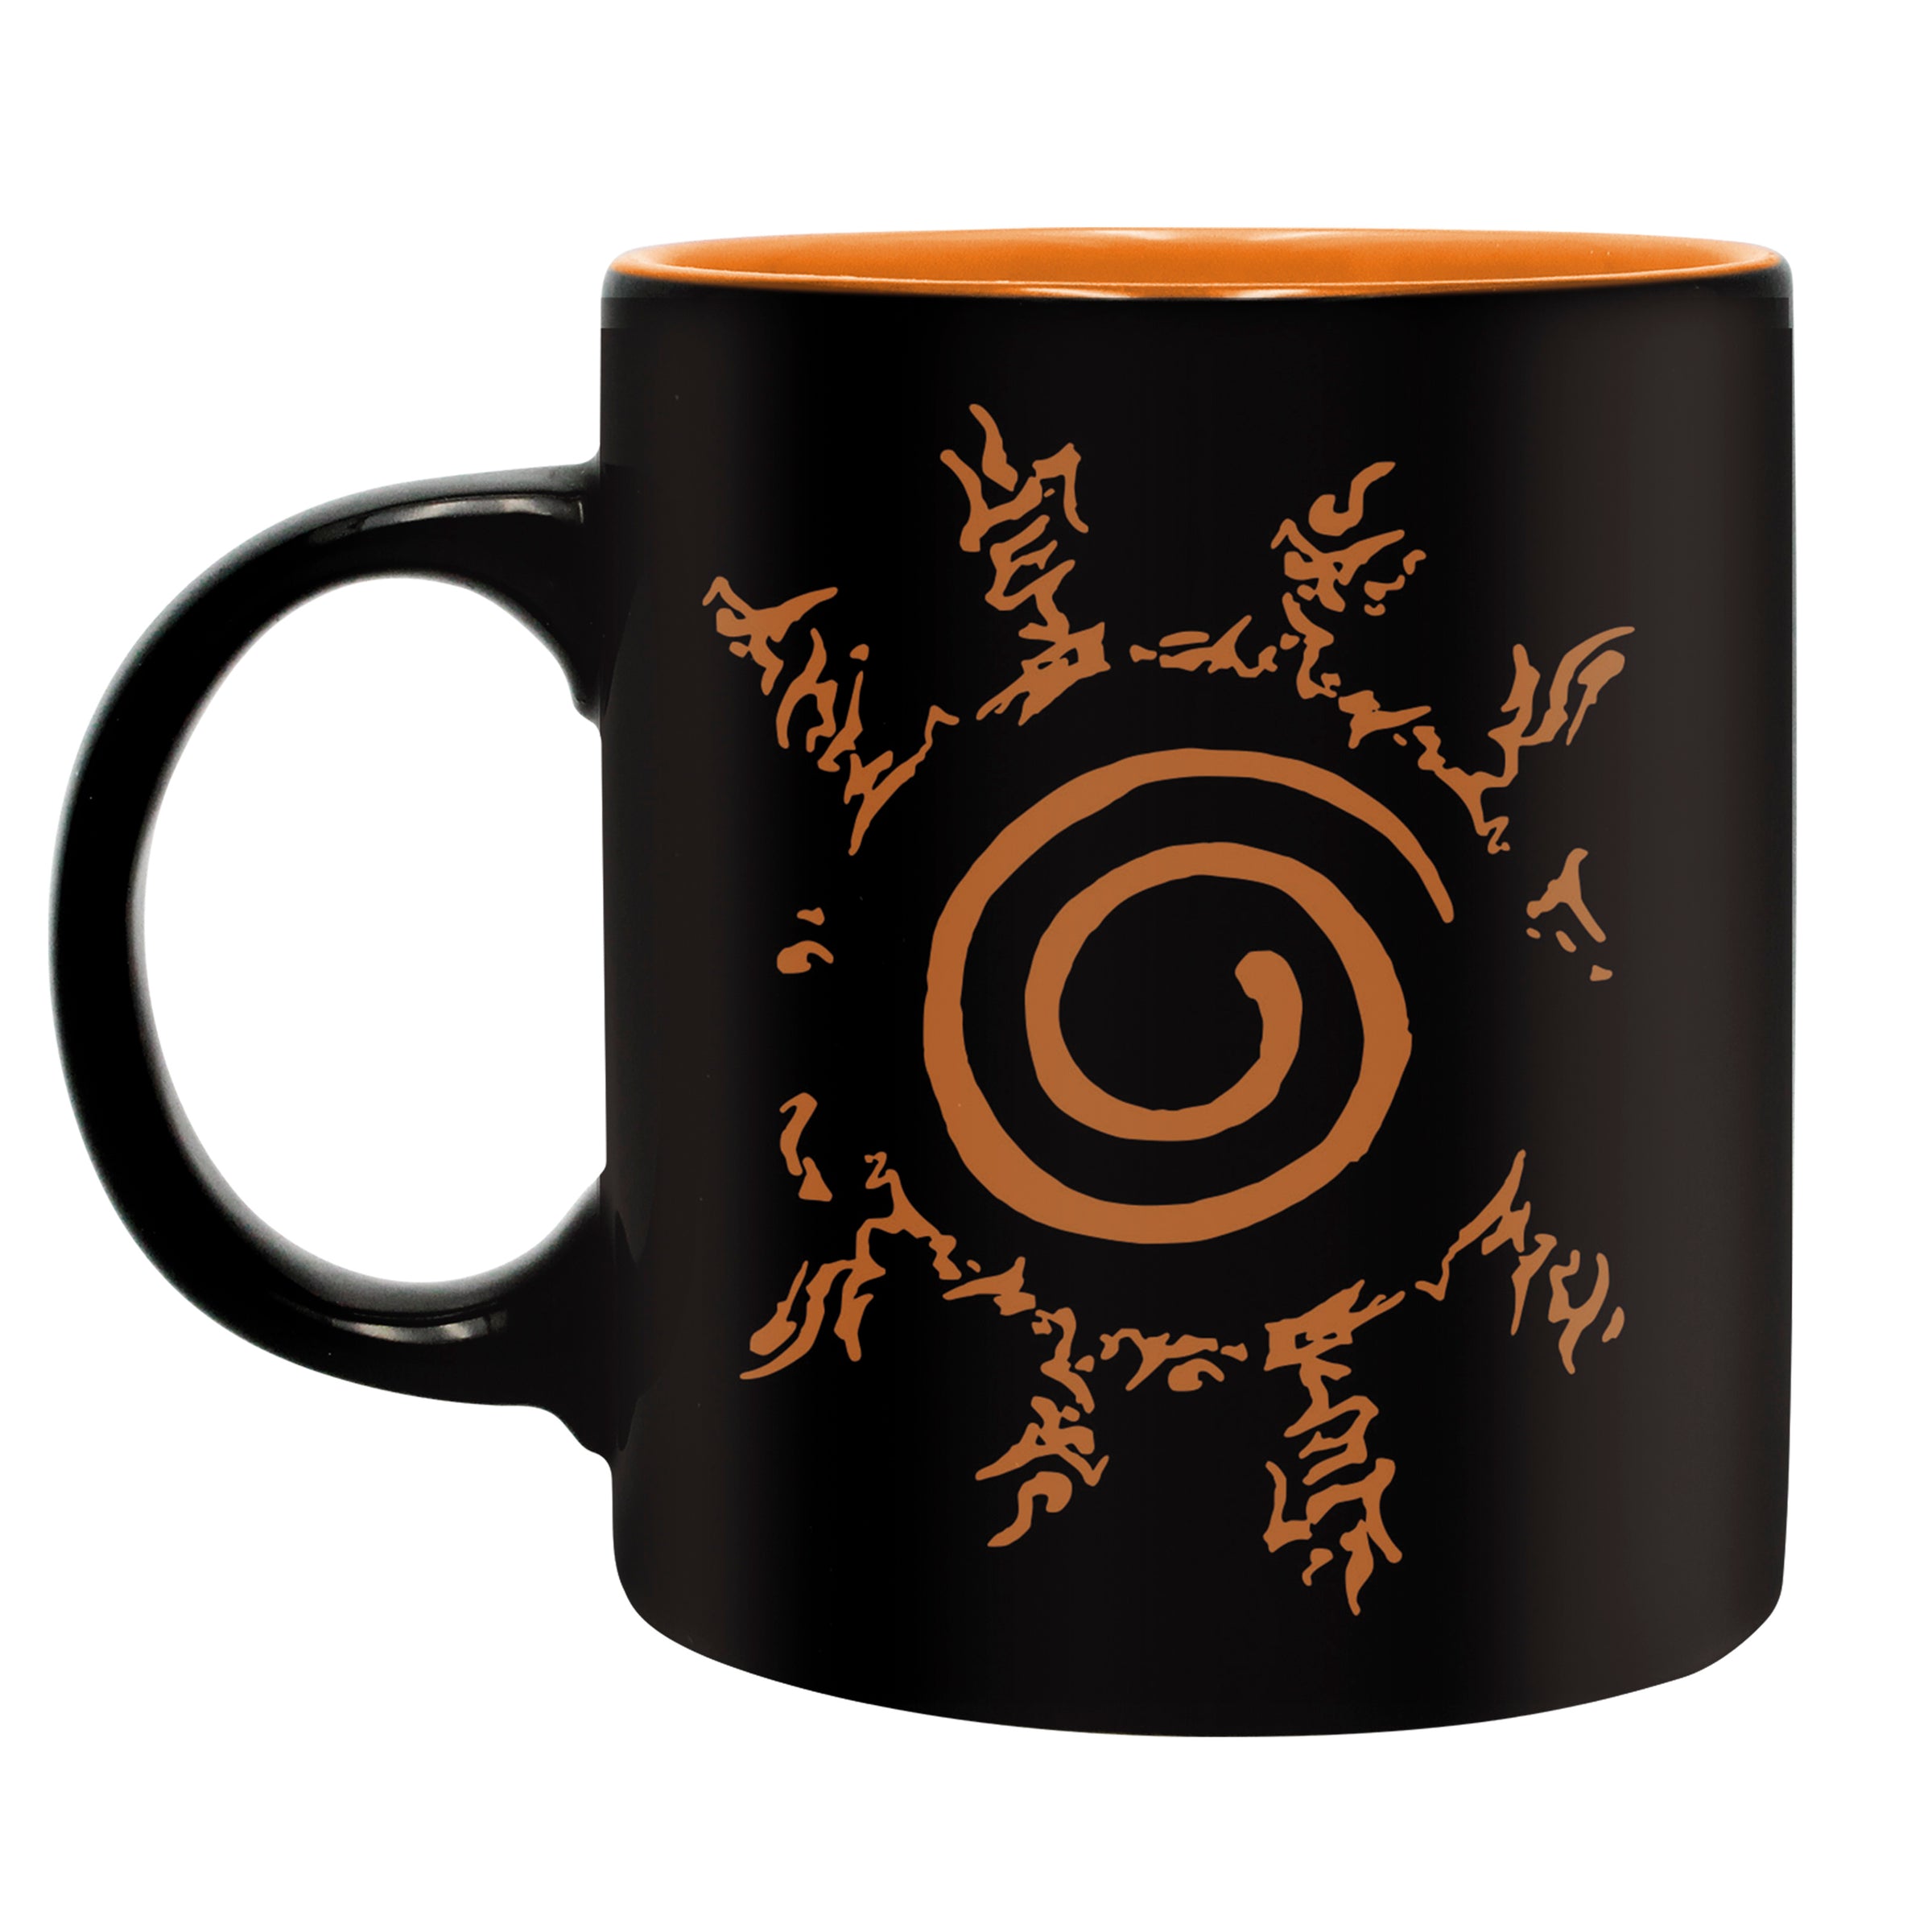 Naruto Shippuden - Coffret Cadeau, Naruto Fan Package